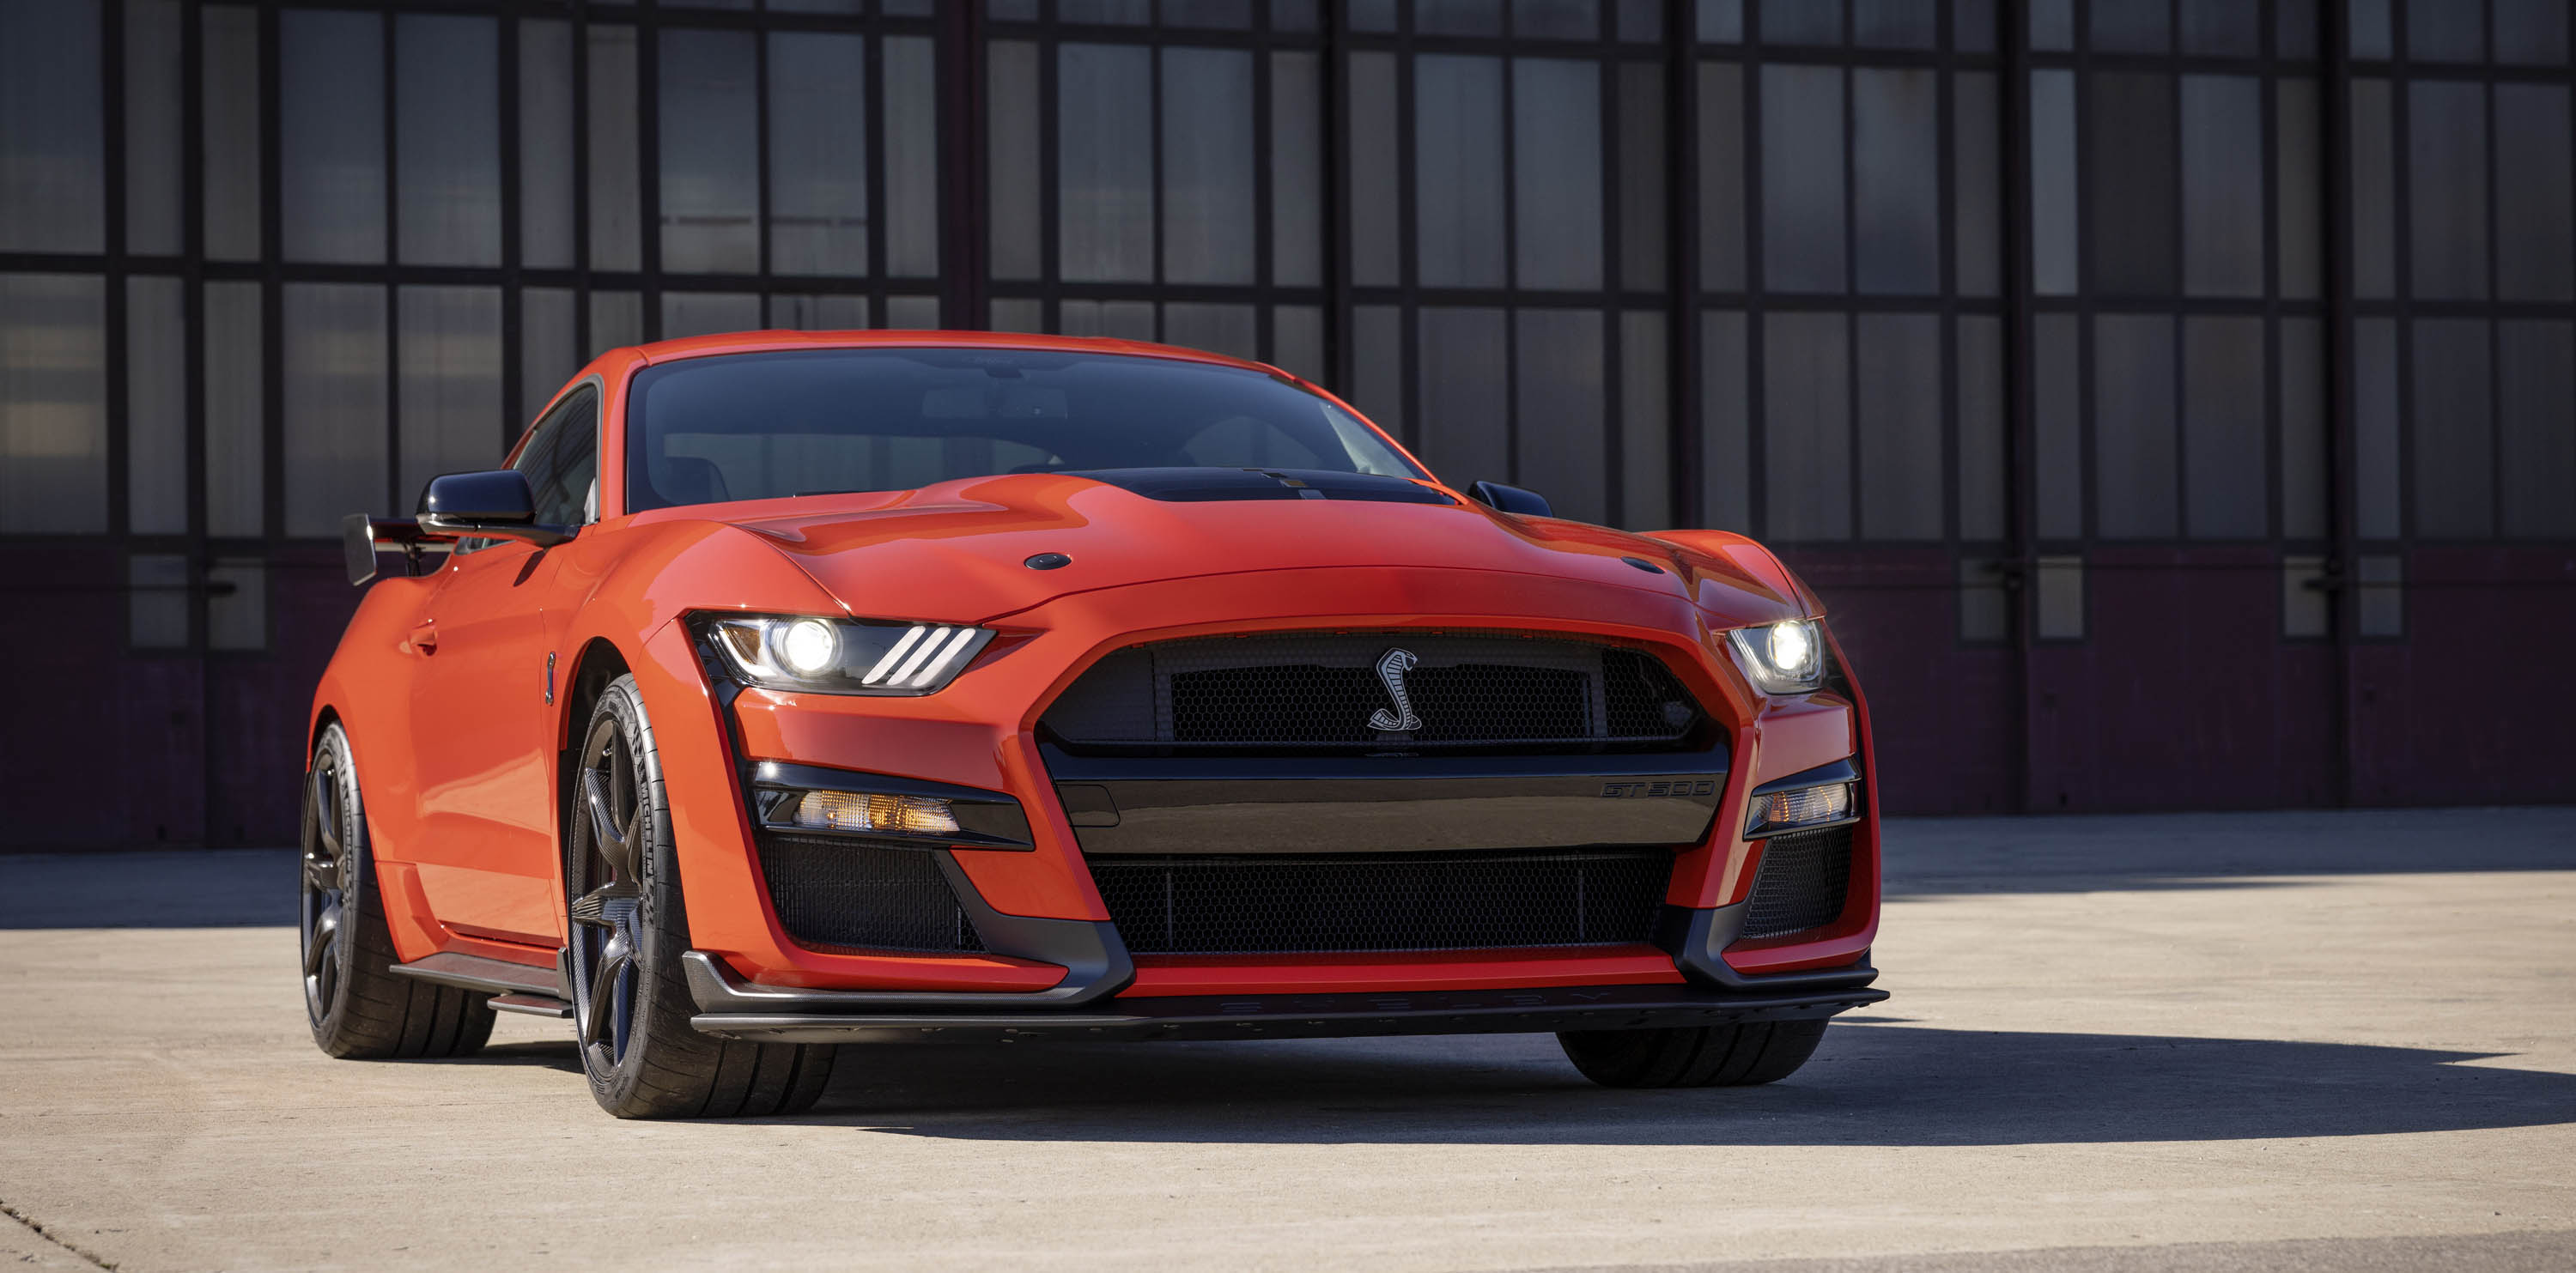 2022 Mustang Shelby GT500, спроектированный и построенный Ford Performance как самый мощный из когда-либо созданных автомобилей Ford для уличного движения, сочетает в себе технологии мирового класса и силовые агрегаты для достижения уровня производит